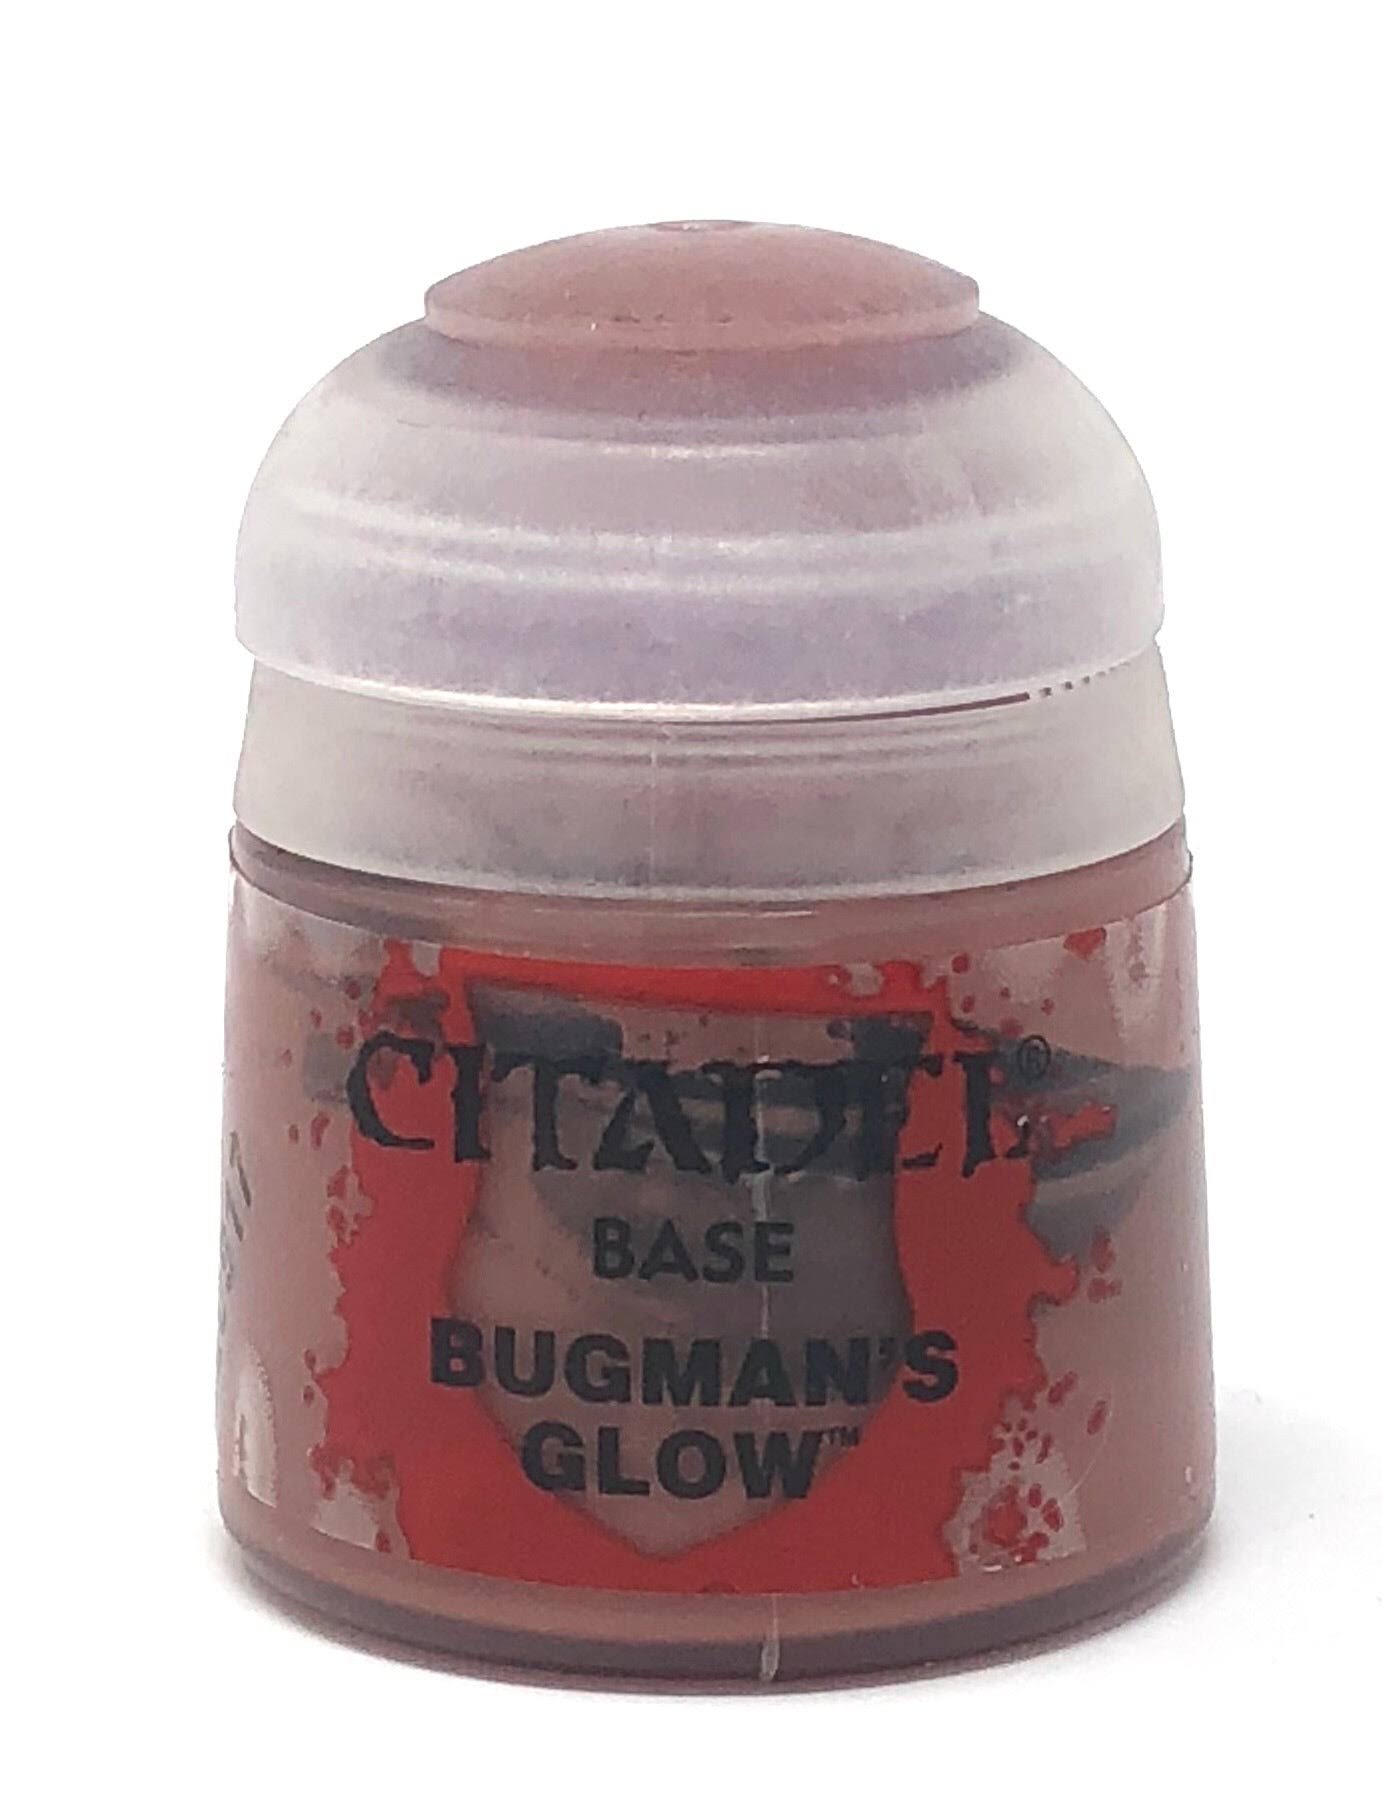 Citadel Base - Bugman's Glow